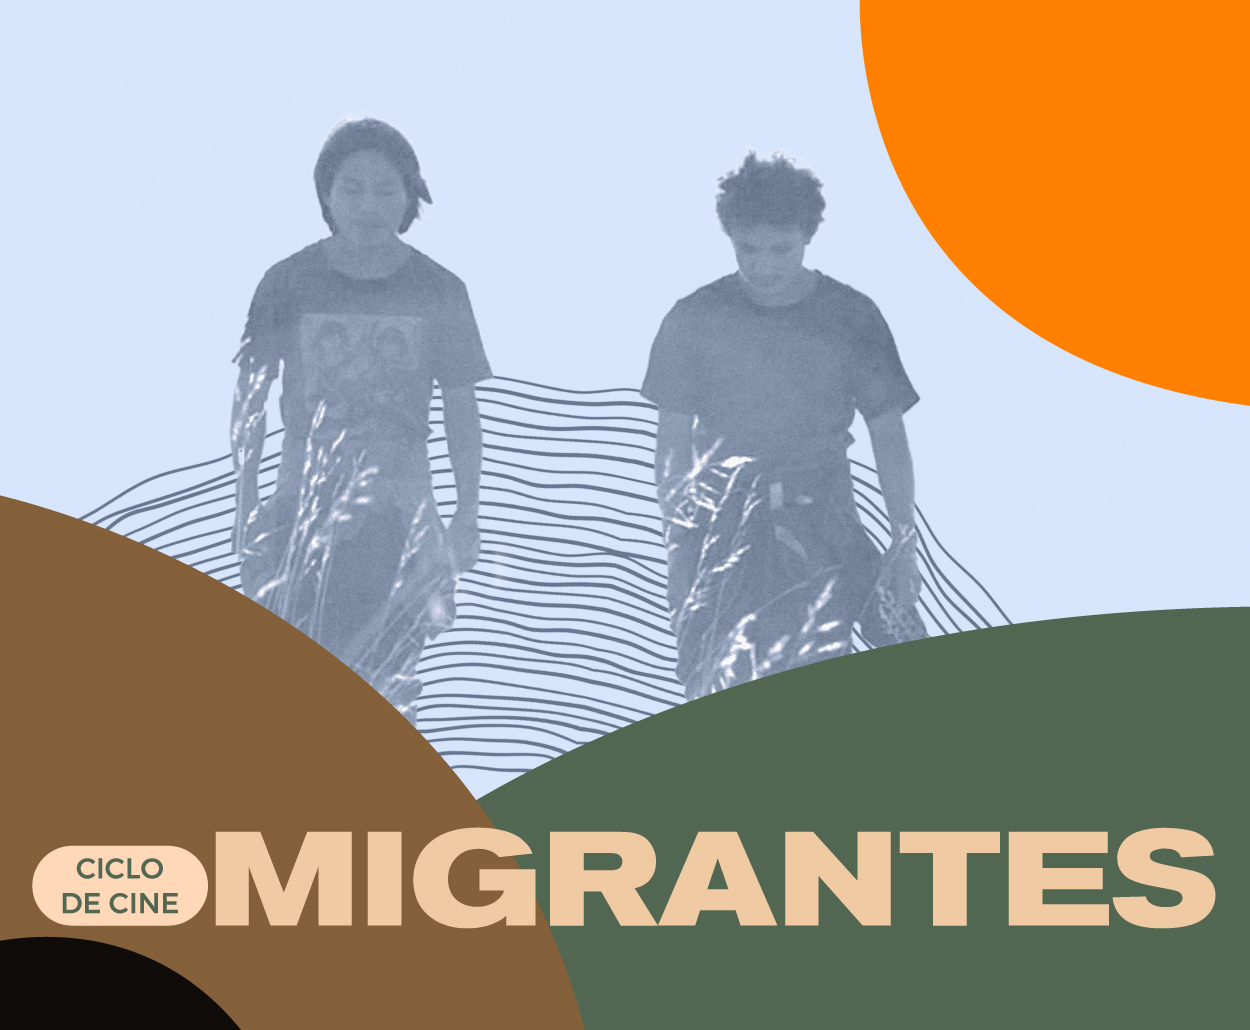 El SPR, a través del Canal Catorce, presenta el Ciclo de Cine “Migrantes”